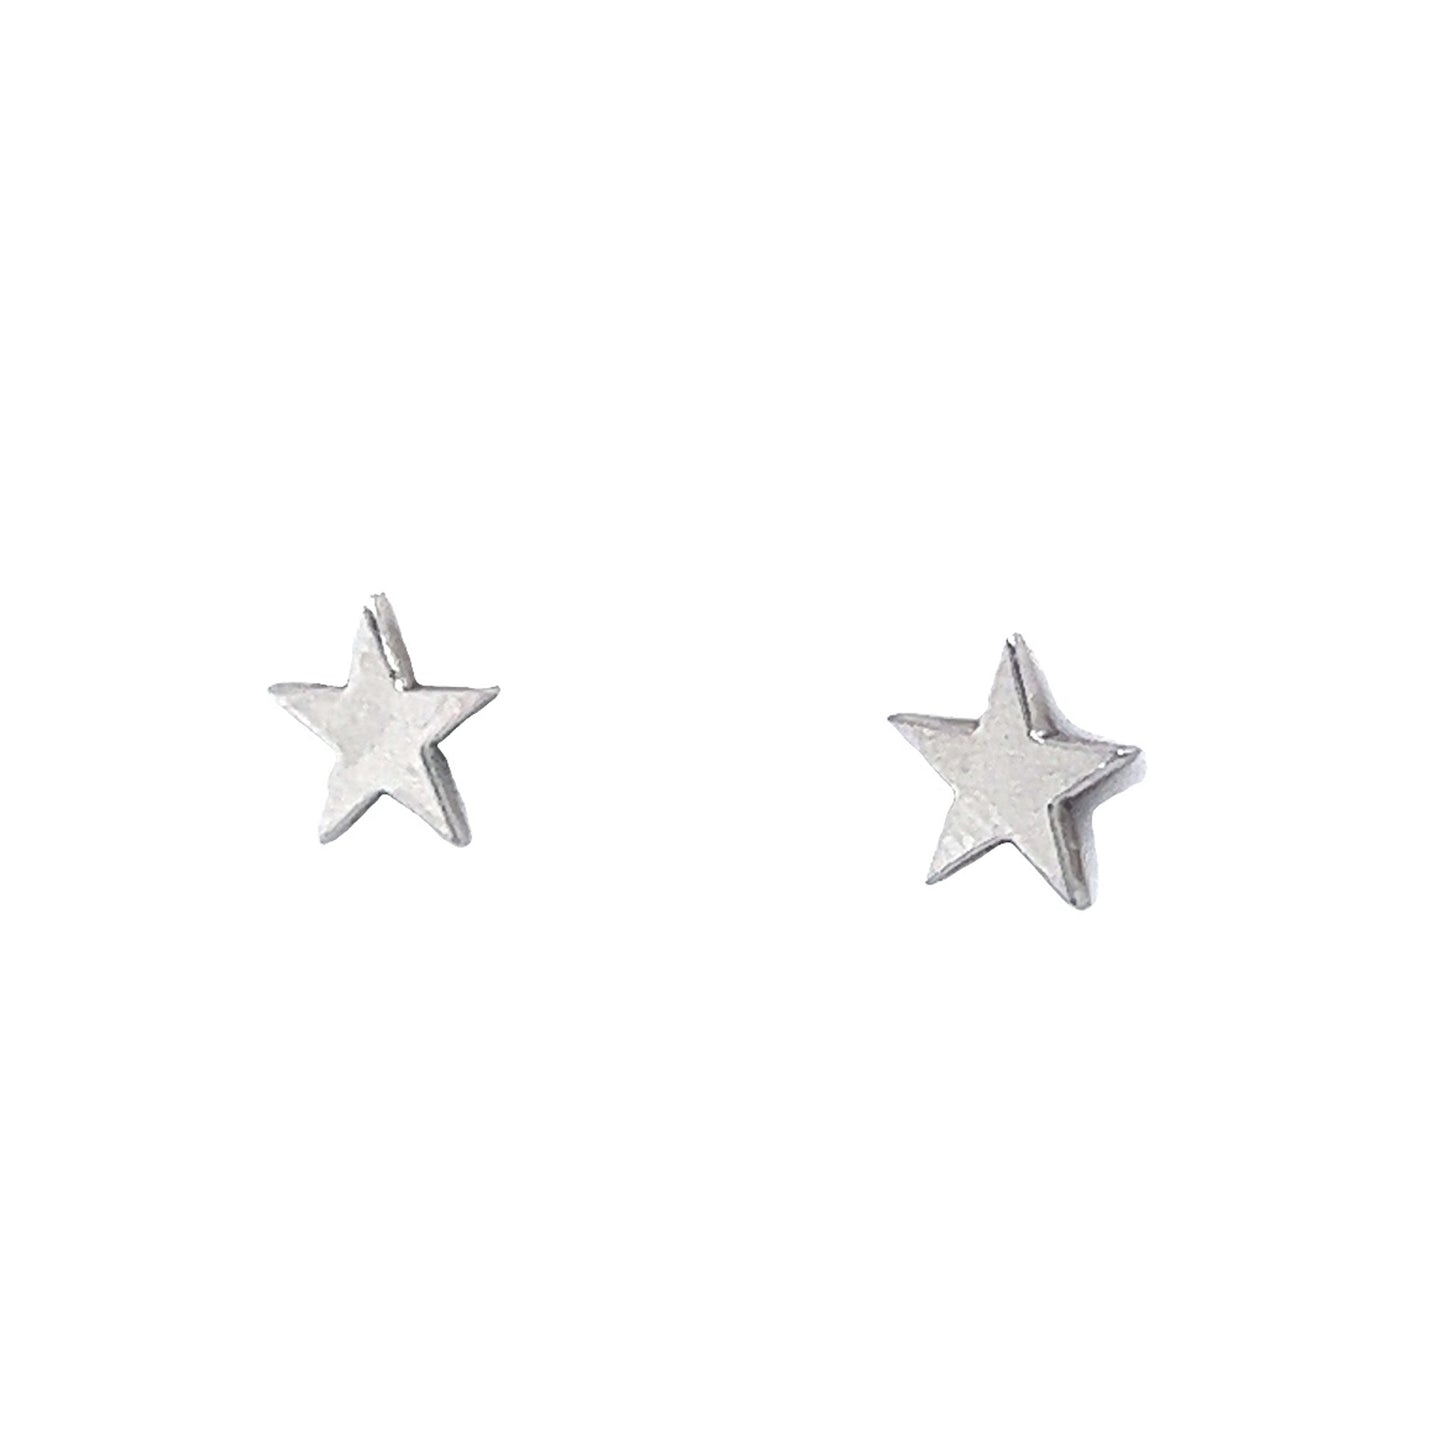 Star Stud Earrings 14K White Gold